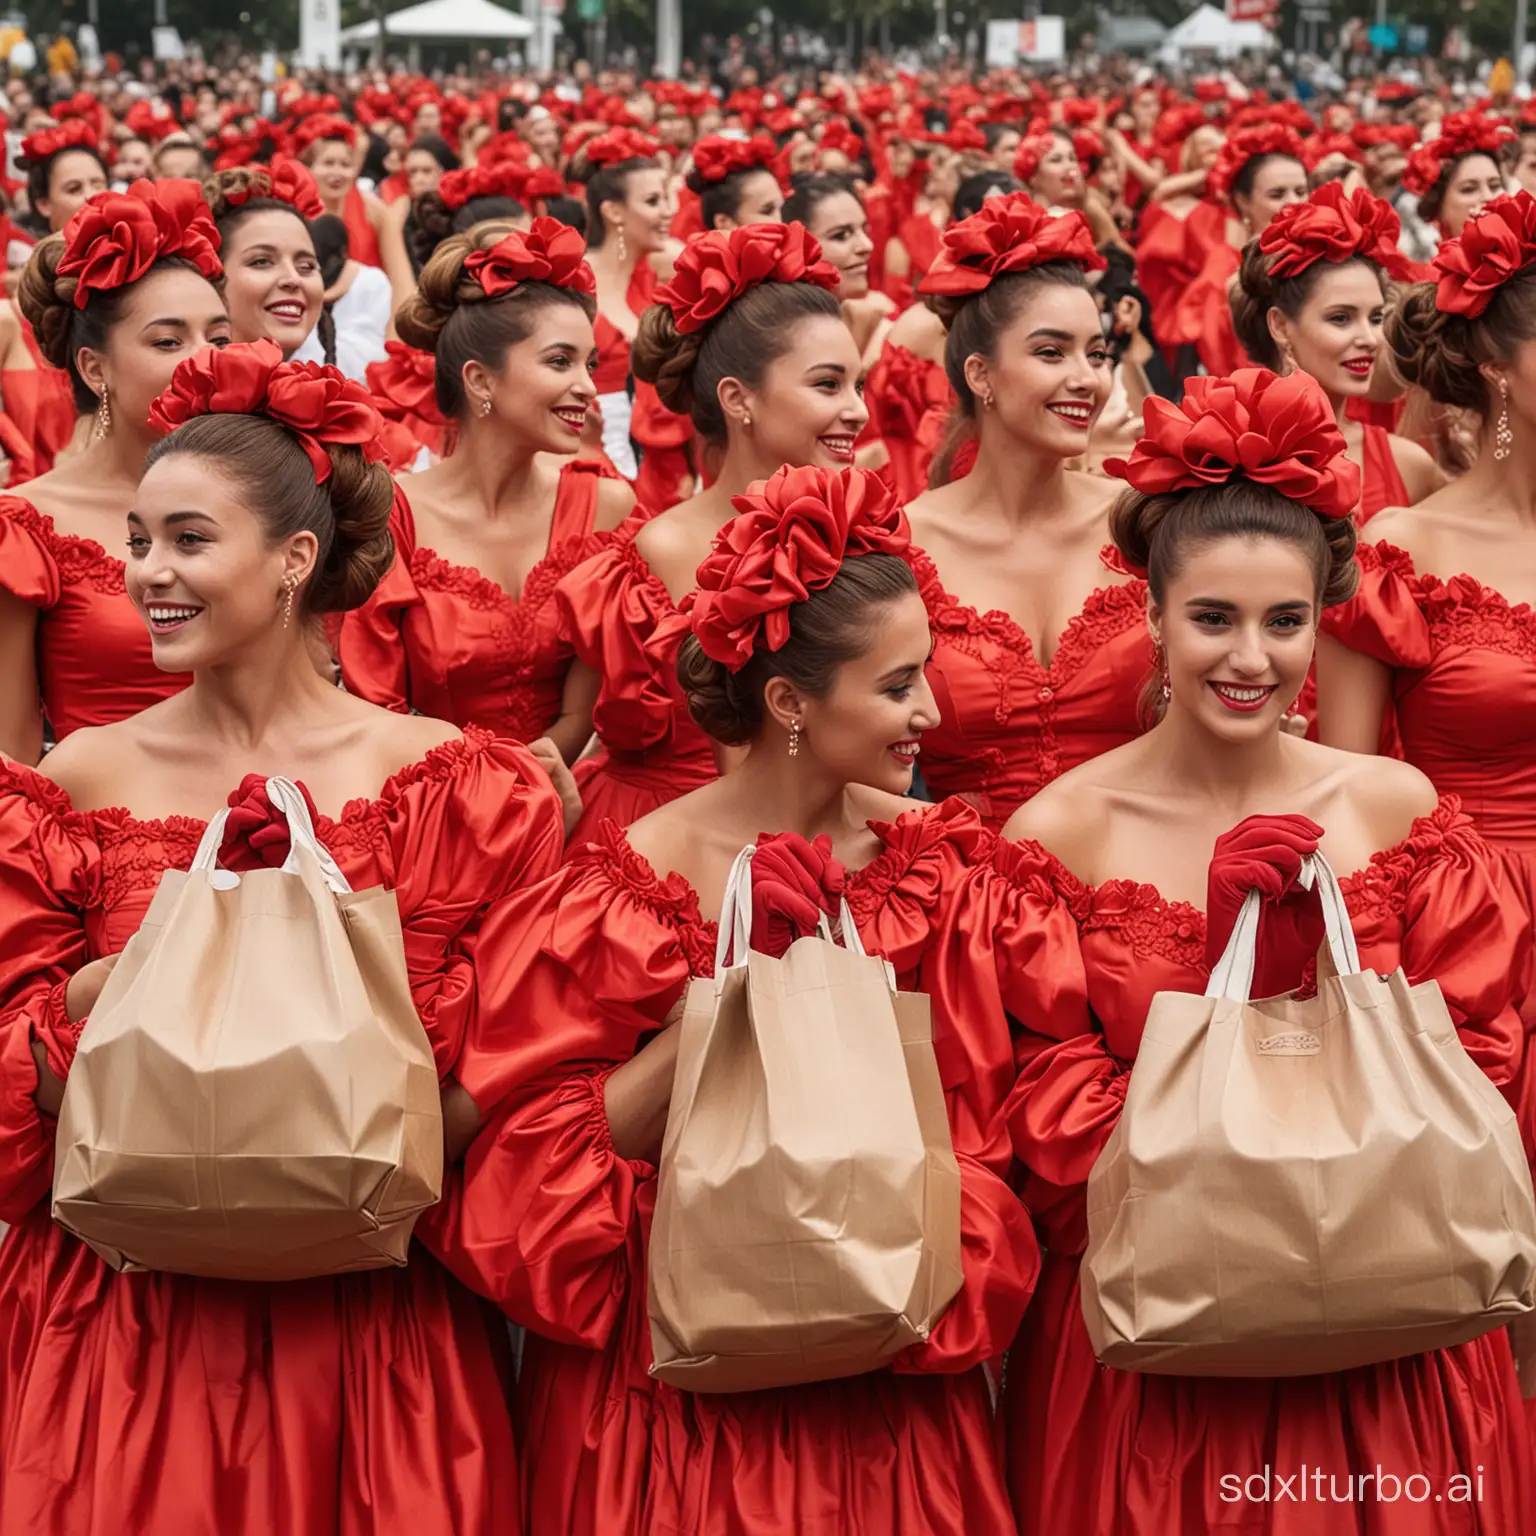 Glamorous-Red-Gala-Dresses-Women-Shopping-at-Interlagos